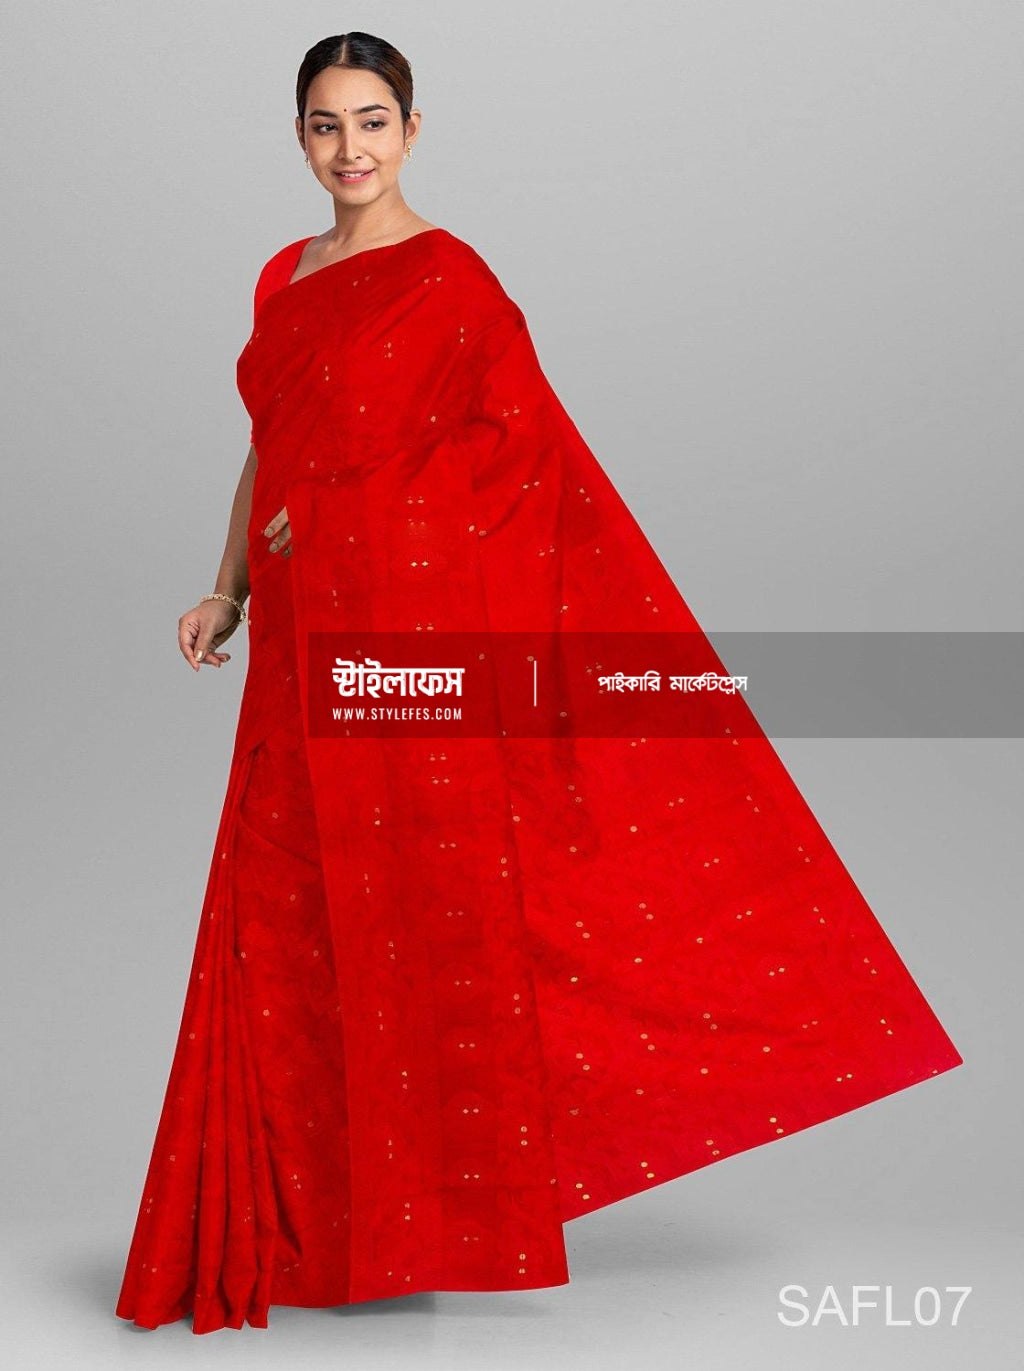 Sohini Sarkar: পরনে লাল জামদানি, পা রাঙালেন আলতায়! সোহিনী চোখ নামিয়ে  হাসতেই যে মন হারাচ্ছে সবাই - sohini sarkar looks elegant in deep red jamdani  saree for her photoshoot - eisamay